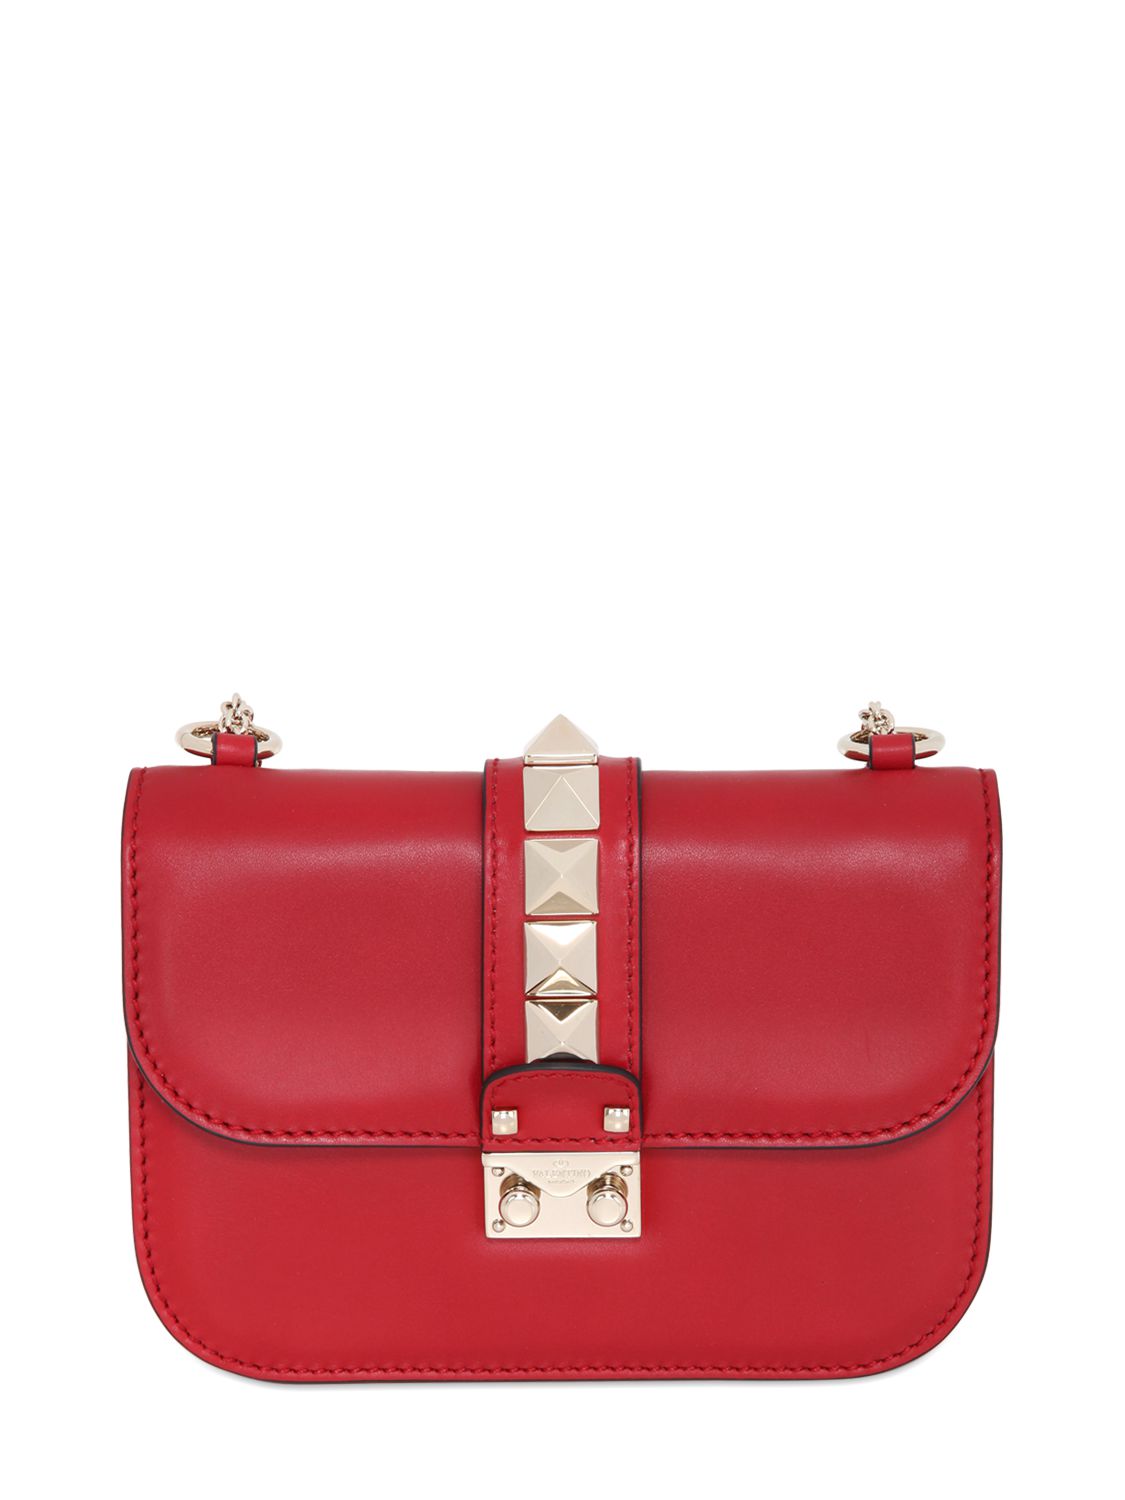 Valentino borsa piccola "lock" in nappa rosso valentino donna borse,valentino abbigliamento trodica di morrovalle,valentino tacchini,la merce più eletti